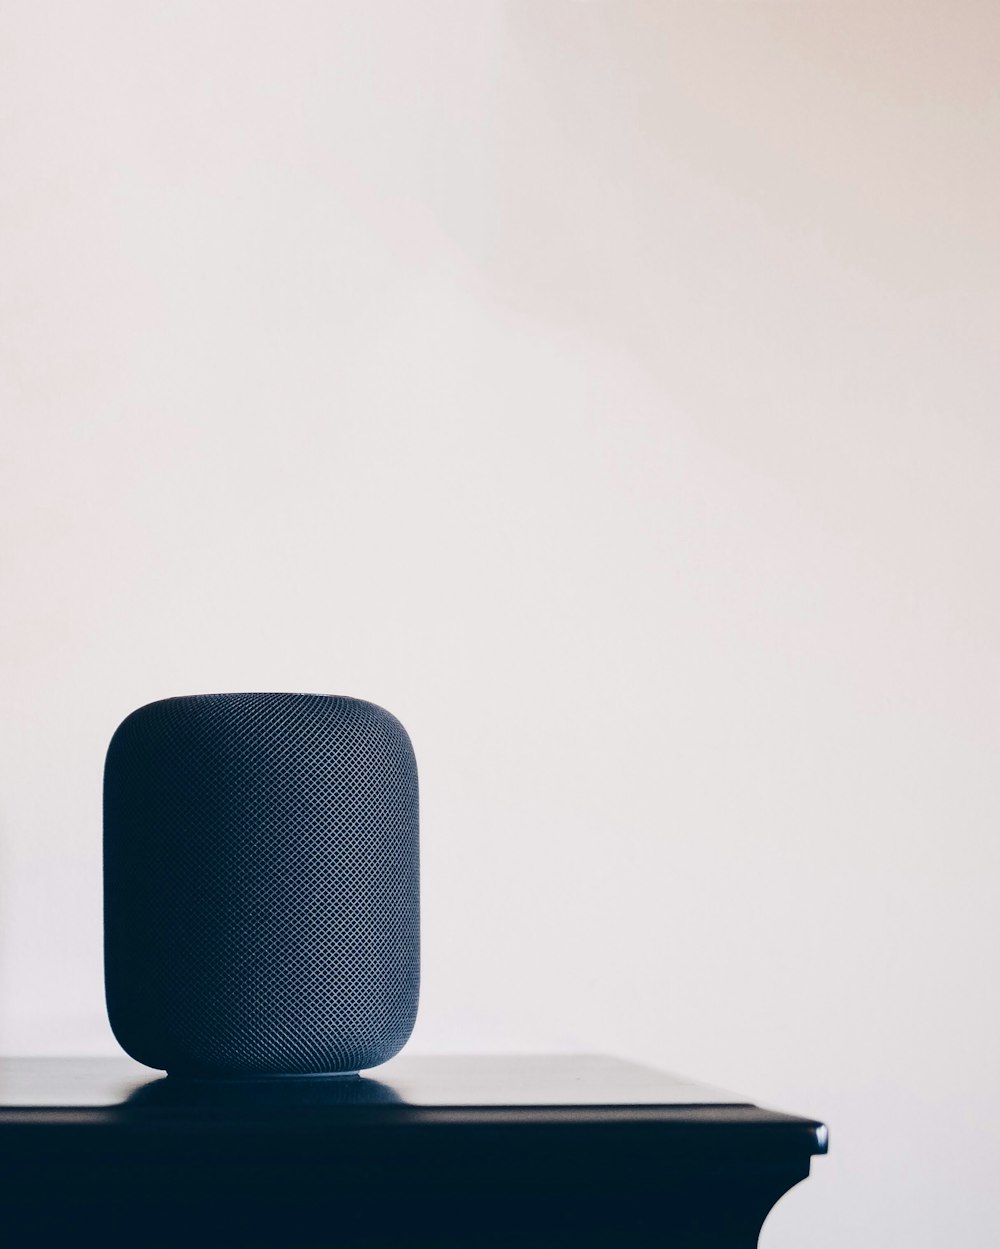 altoparlante Apple HomePod nero sul tavolo